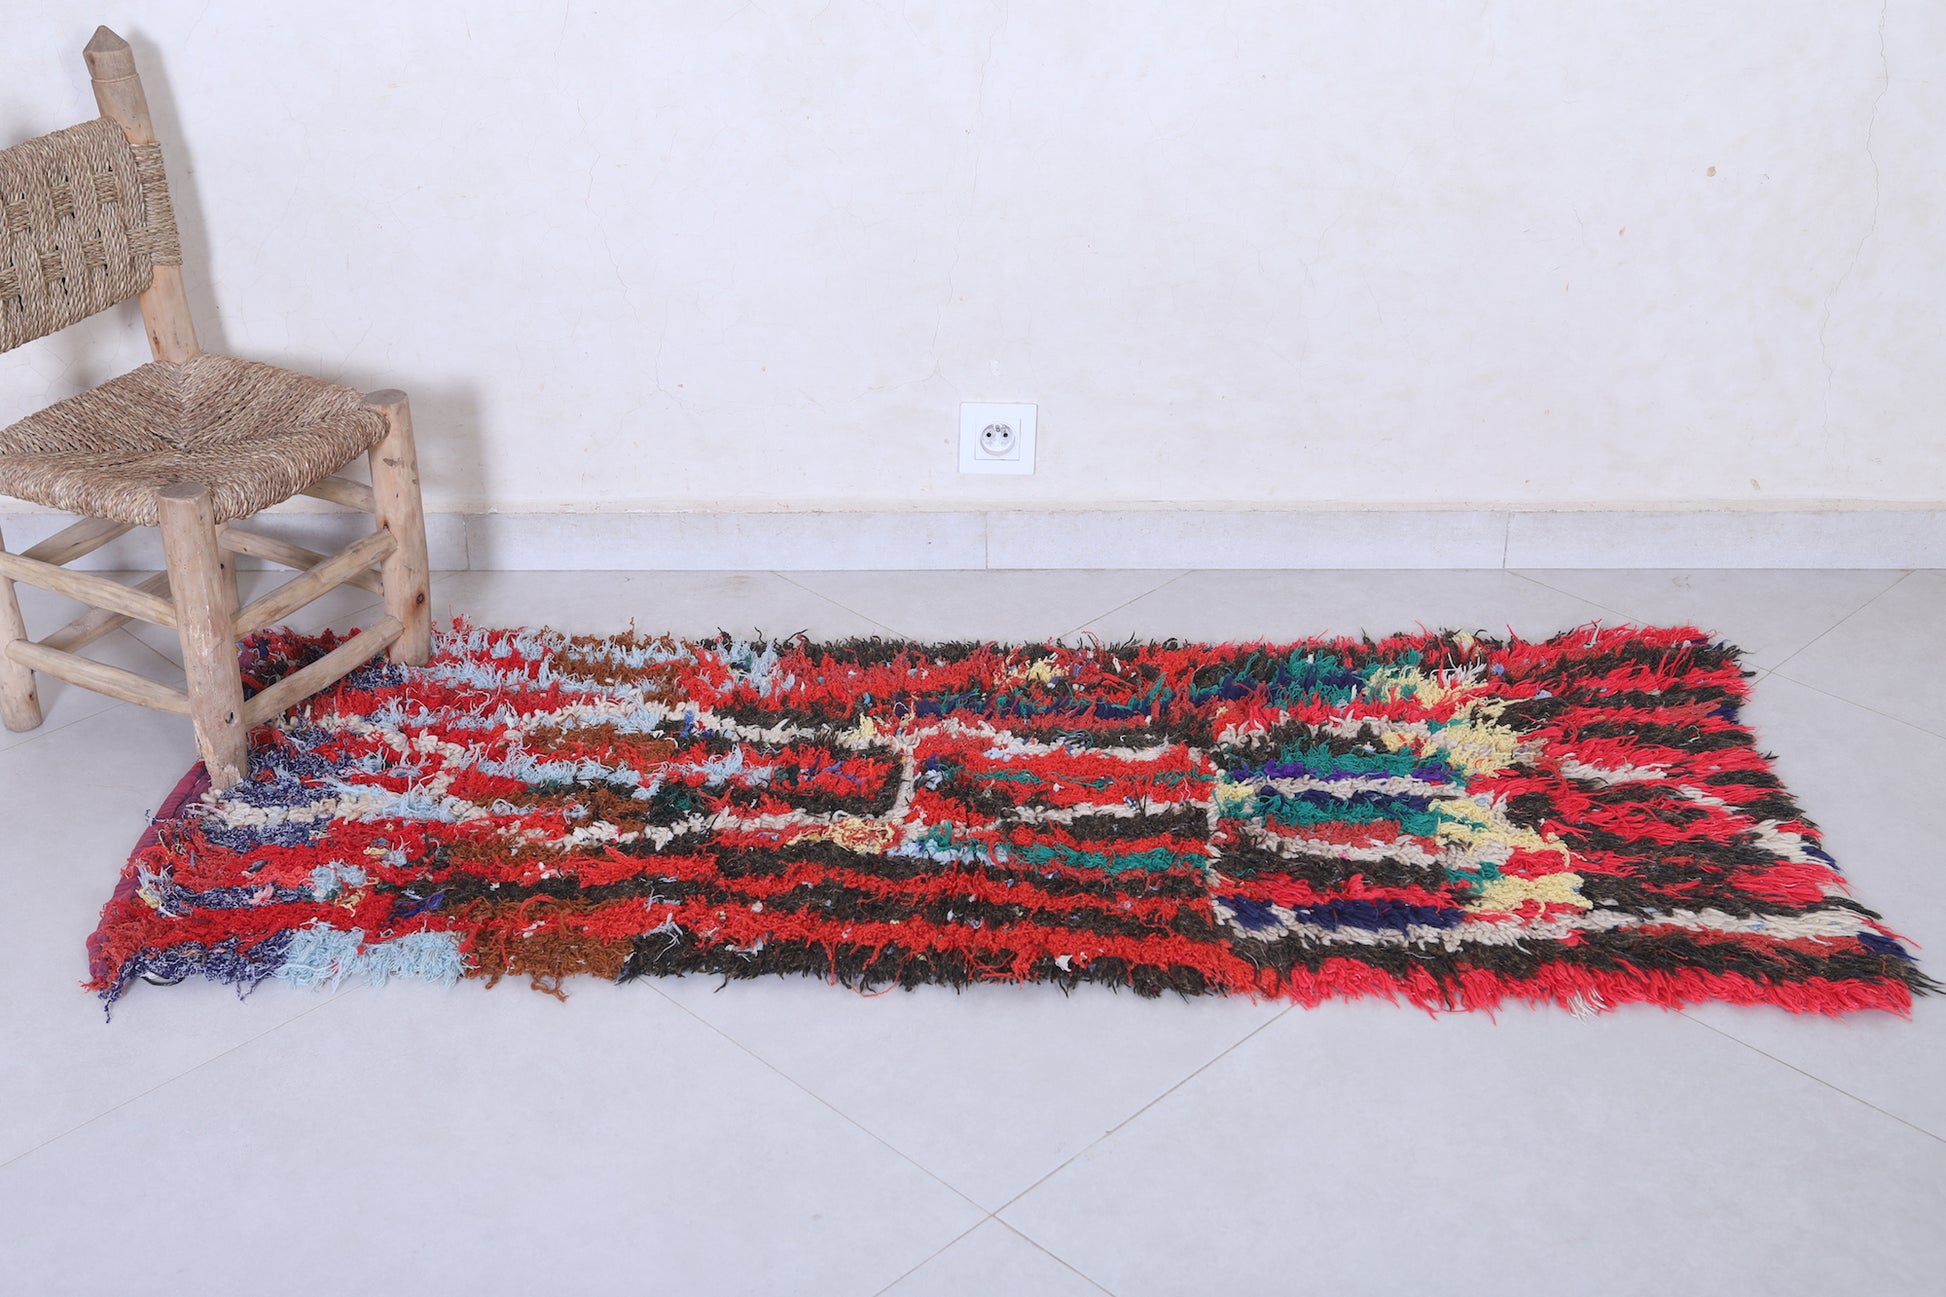 Moroccan rug 1.8 X 5 Feet